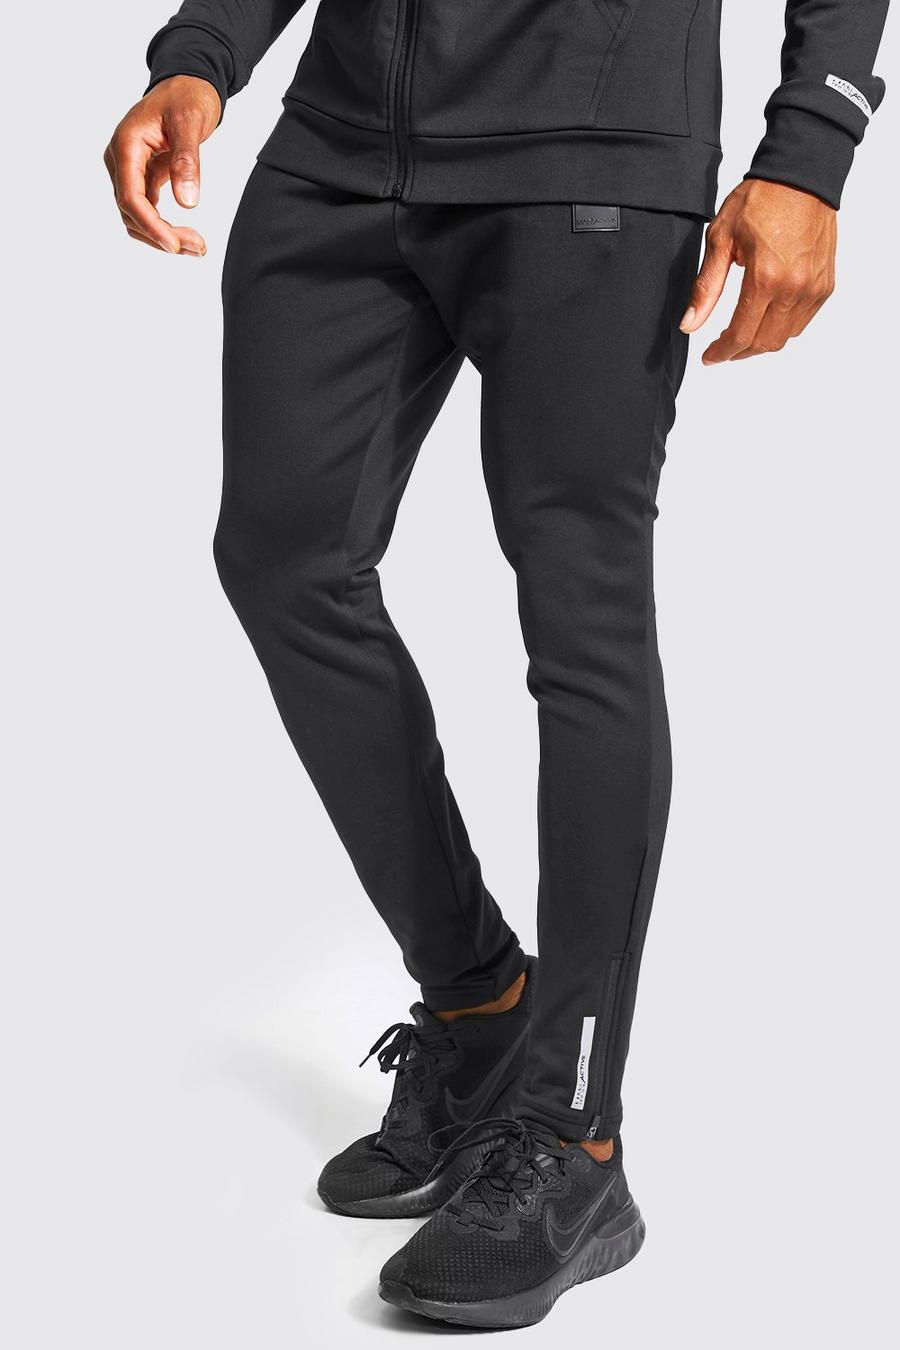 שחור מכנסי ריצה ספורטיביים לאימונים עם כיתוב Man image number 1